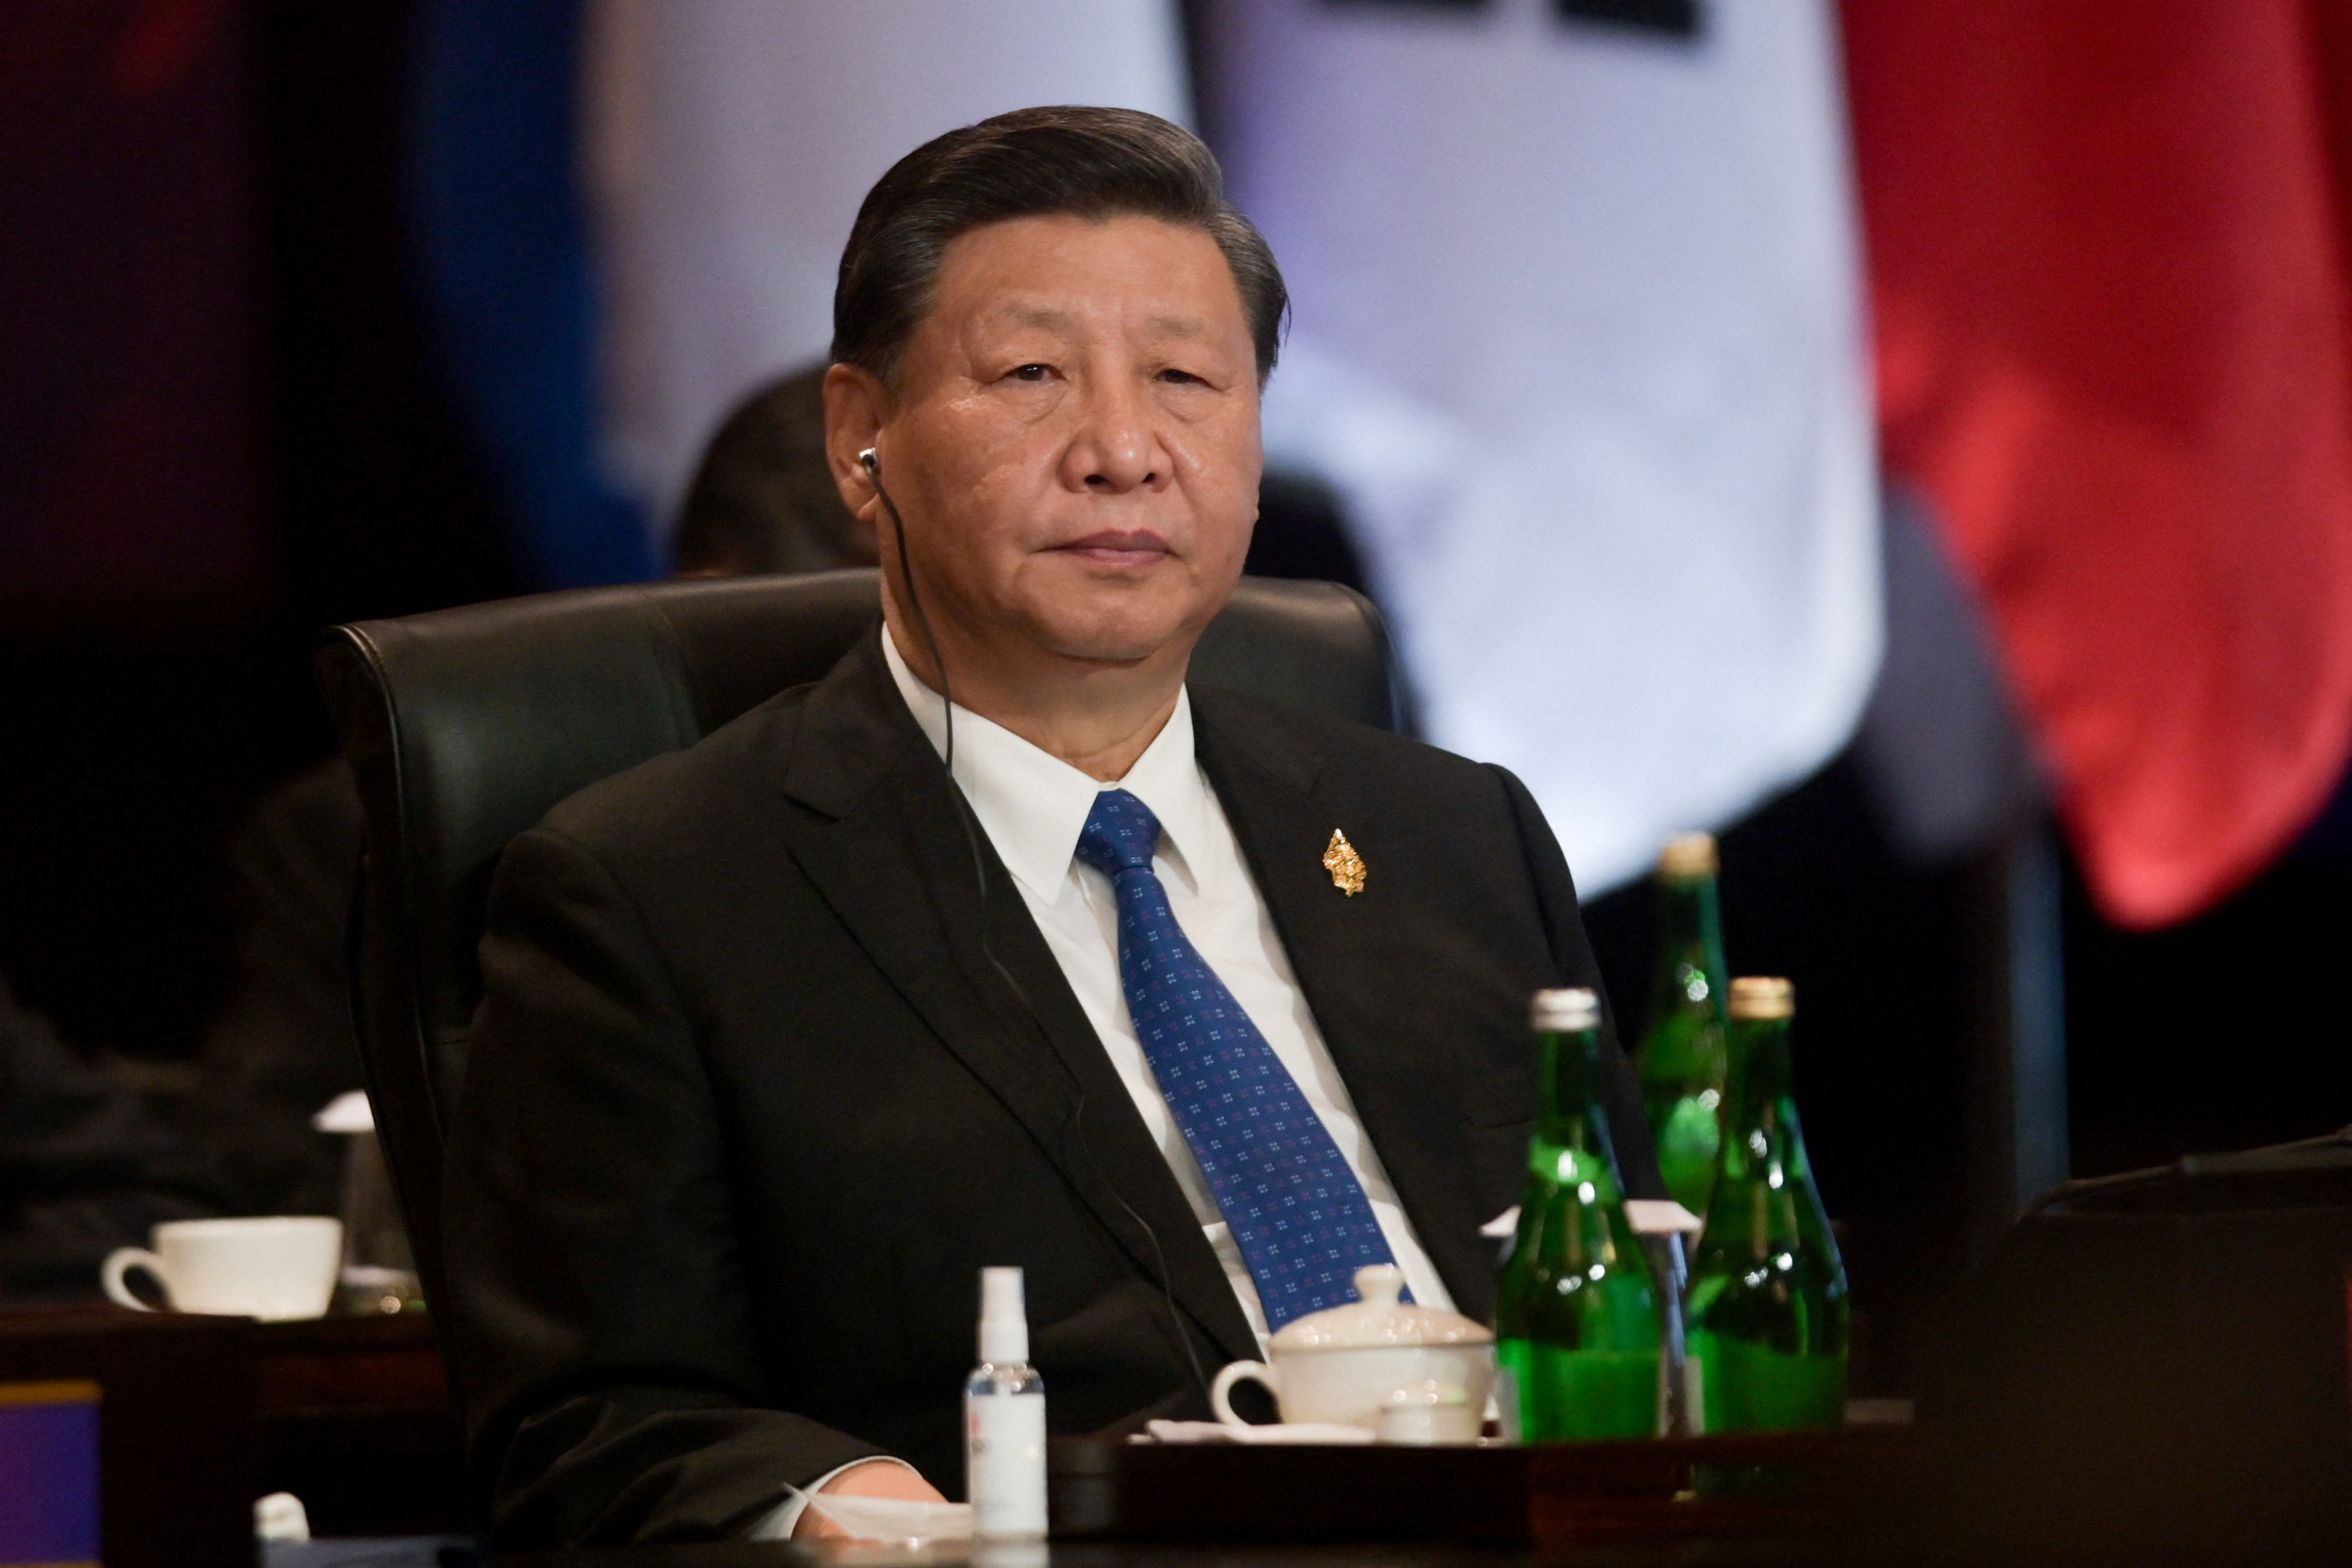 El presidente chino Xi Jinping durante la cumbre en Bali (BAY ISMOYO via REUTERS)